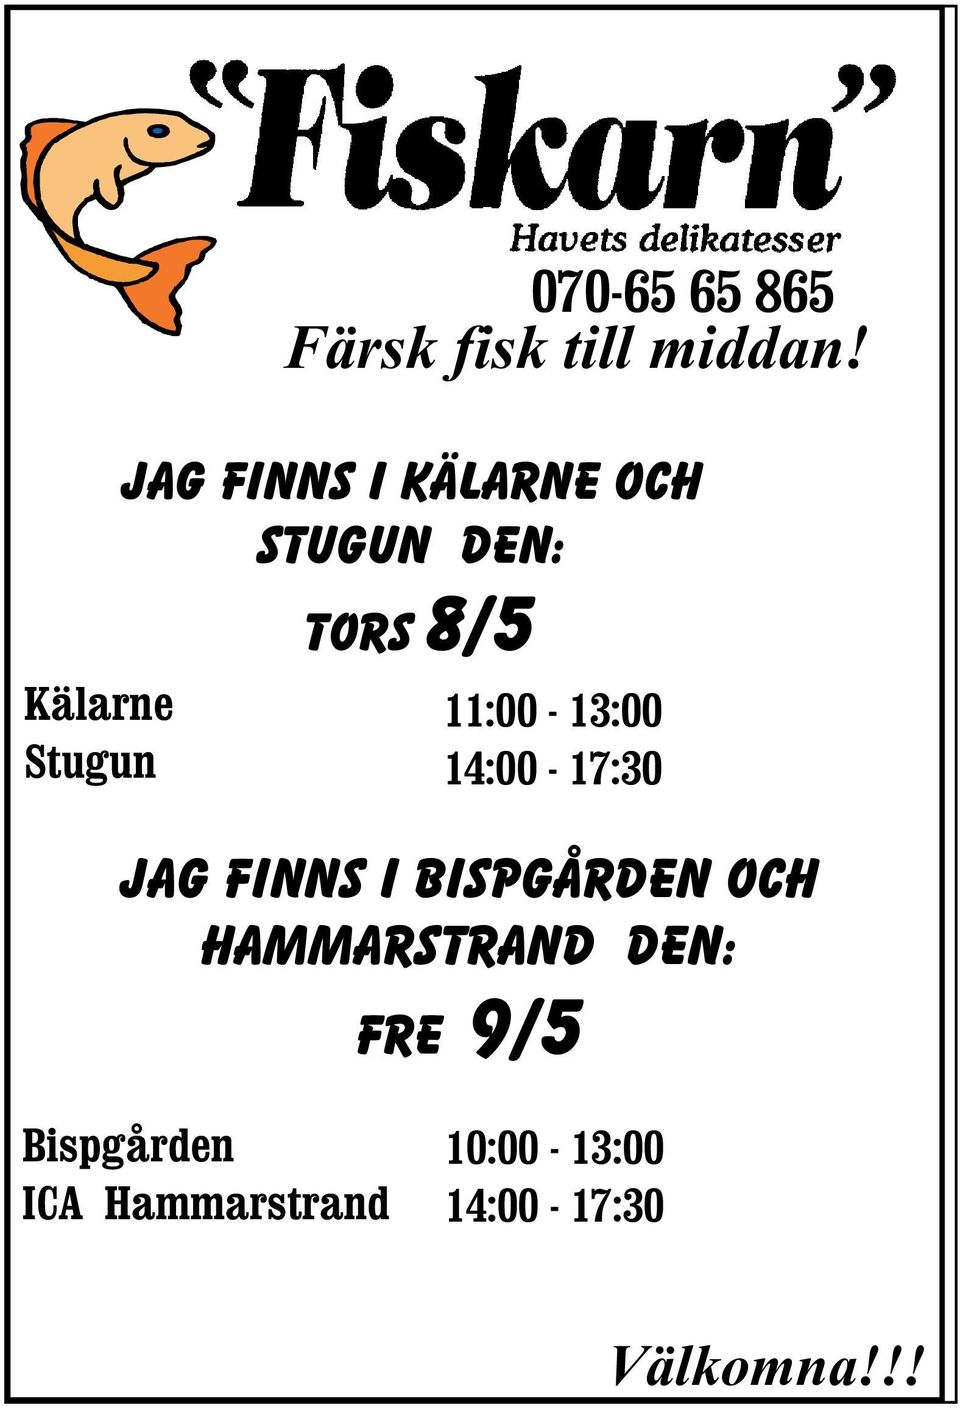 14:00-17:30 Jag finns i Bispgården och Hammarstrand DEN: